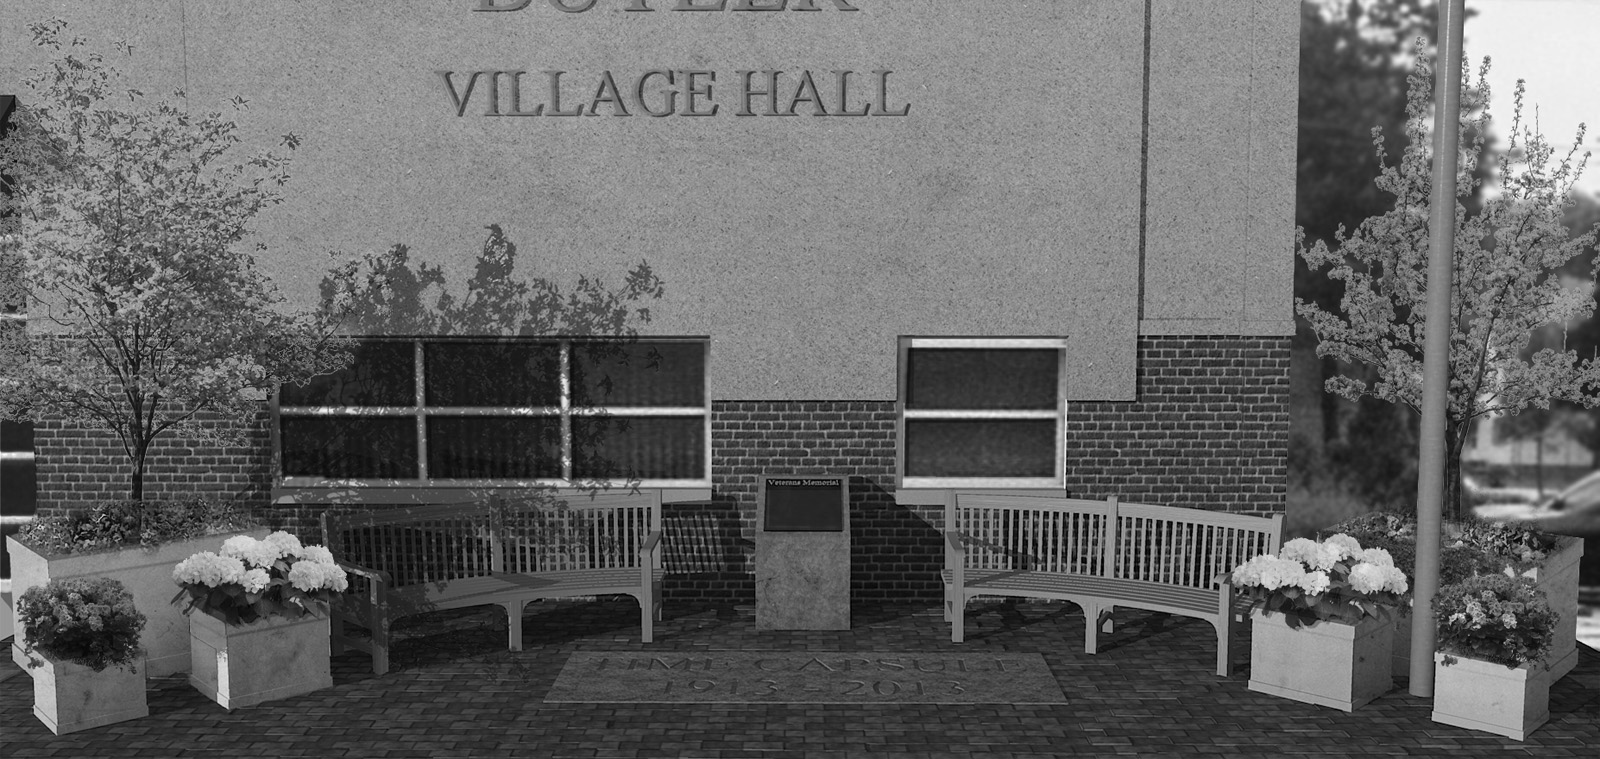 1BW_Butler-Village-Hall.jpg